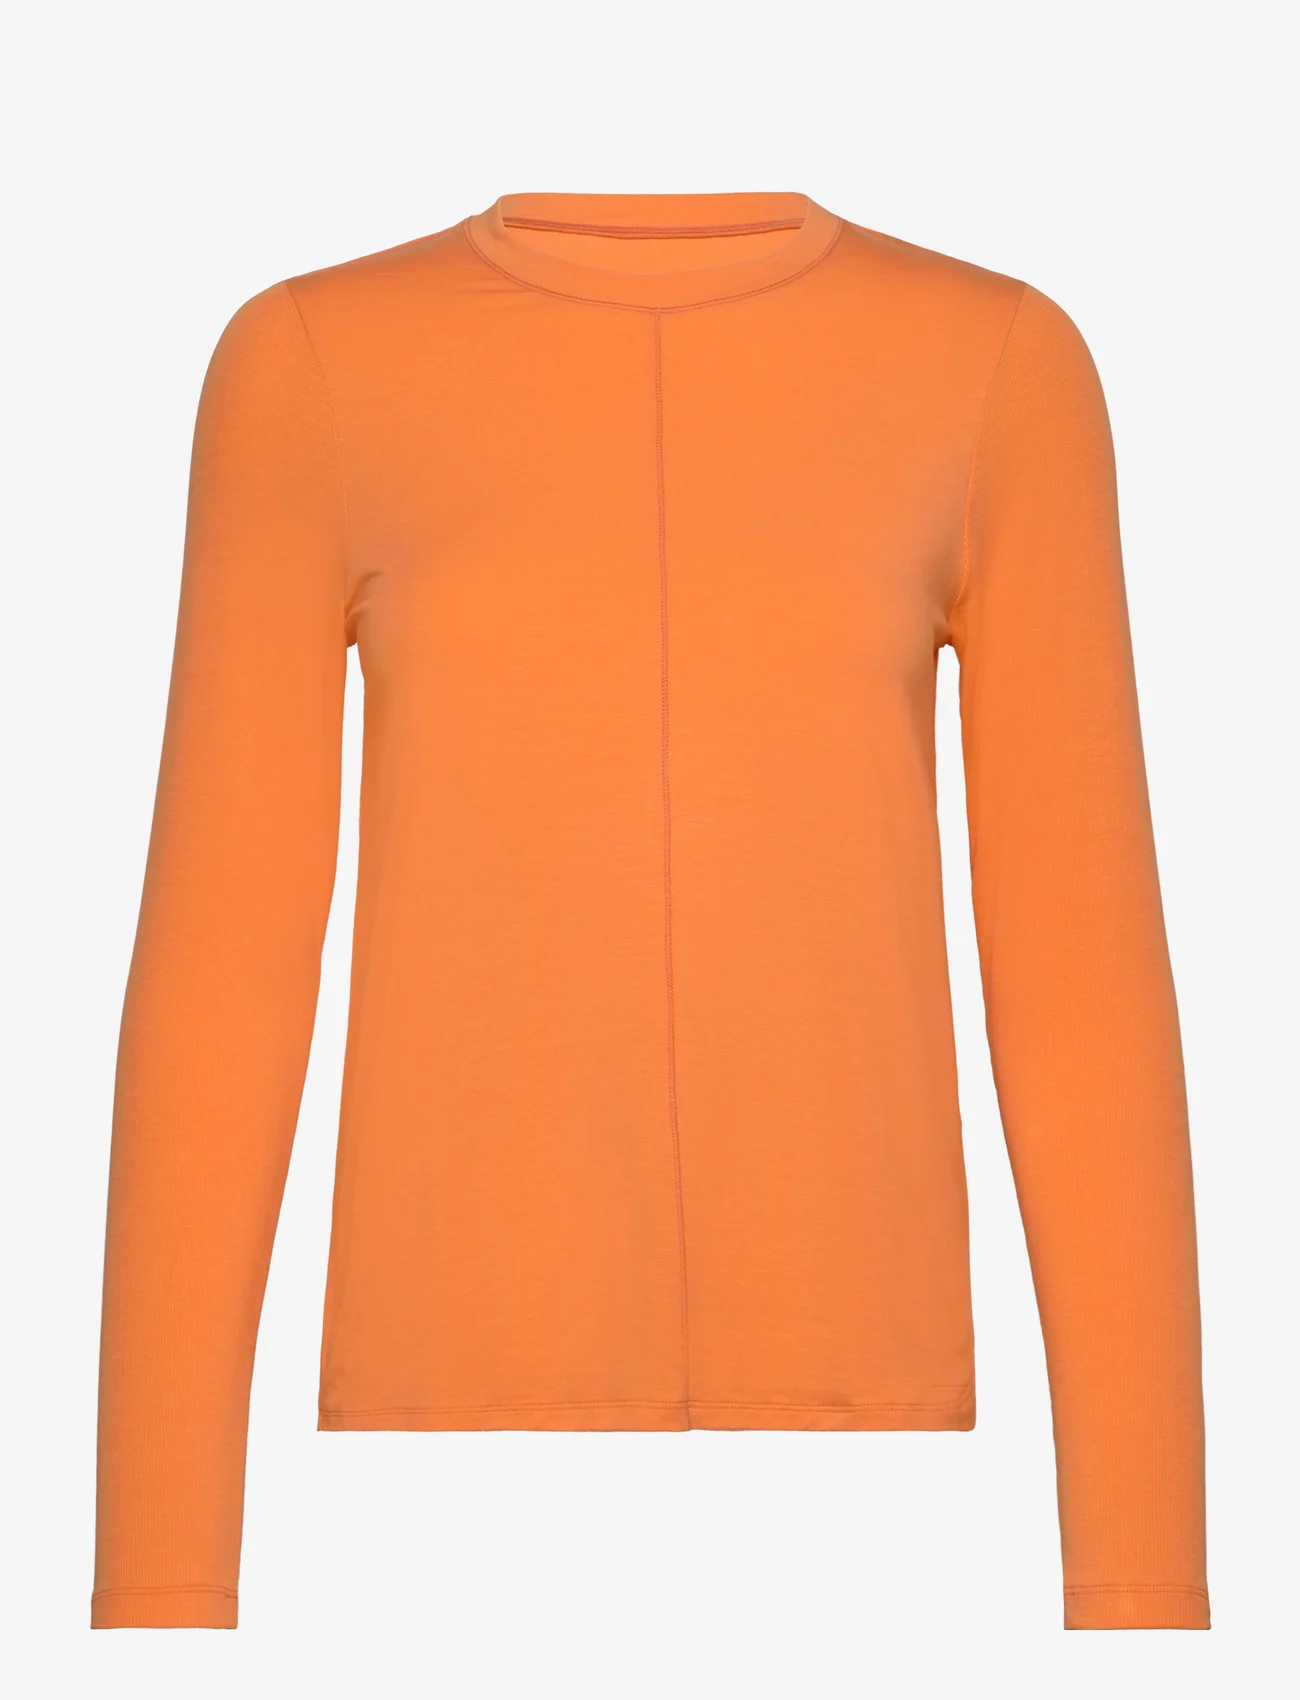 Casall - Delight Crew Neck Long Sleeve - t-shirt & tops - juicy orange - 0